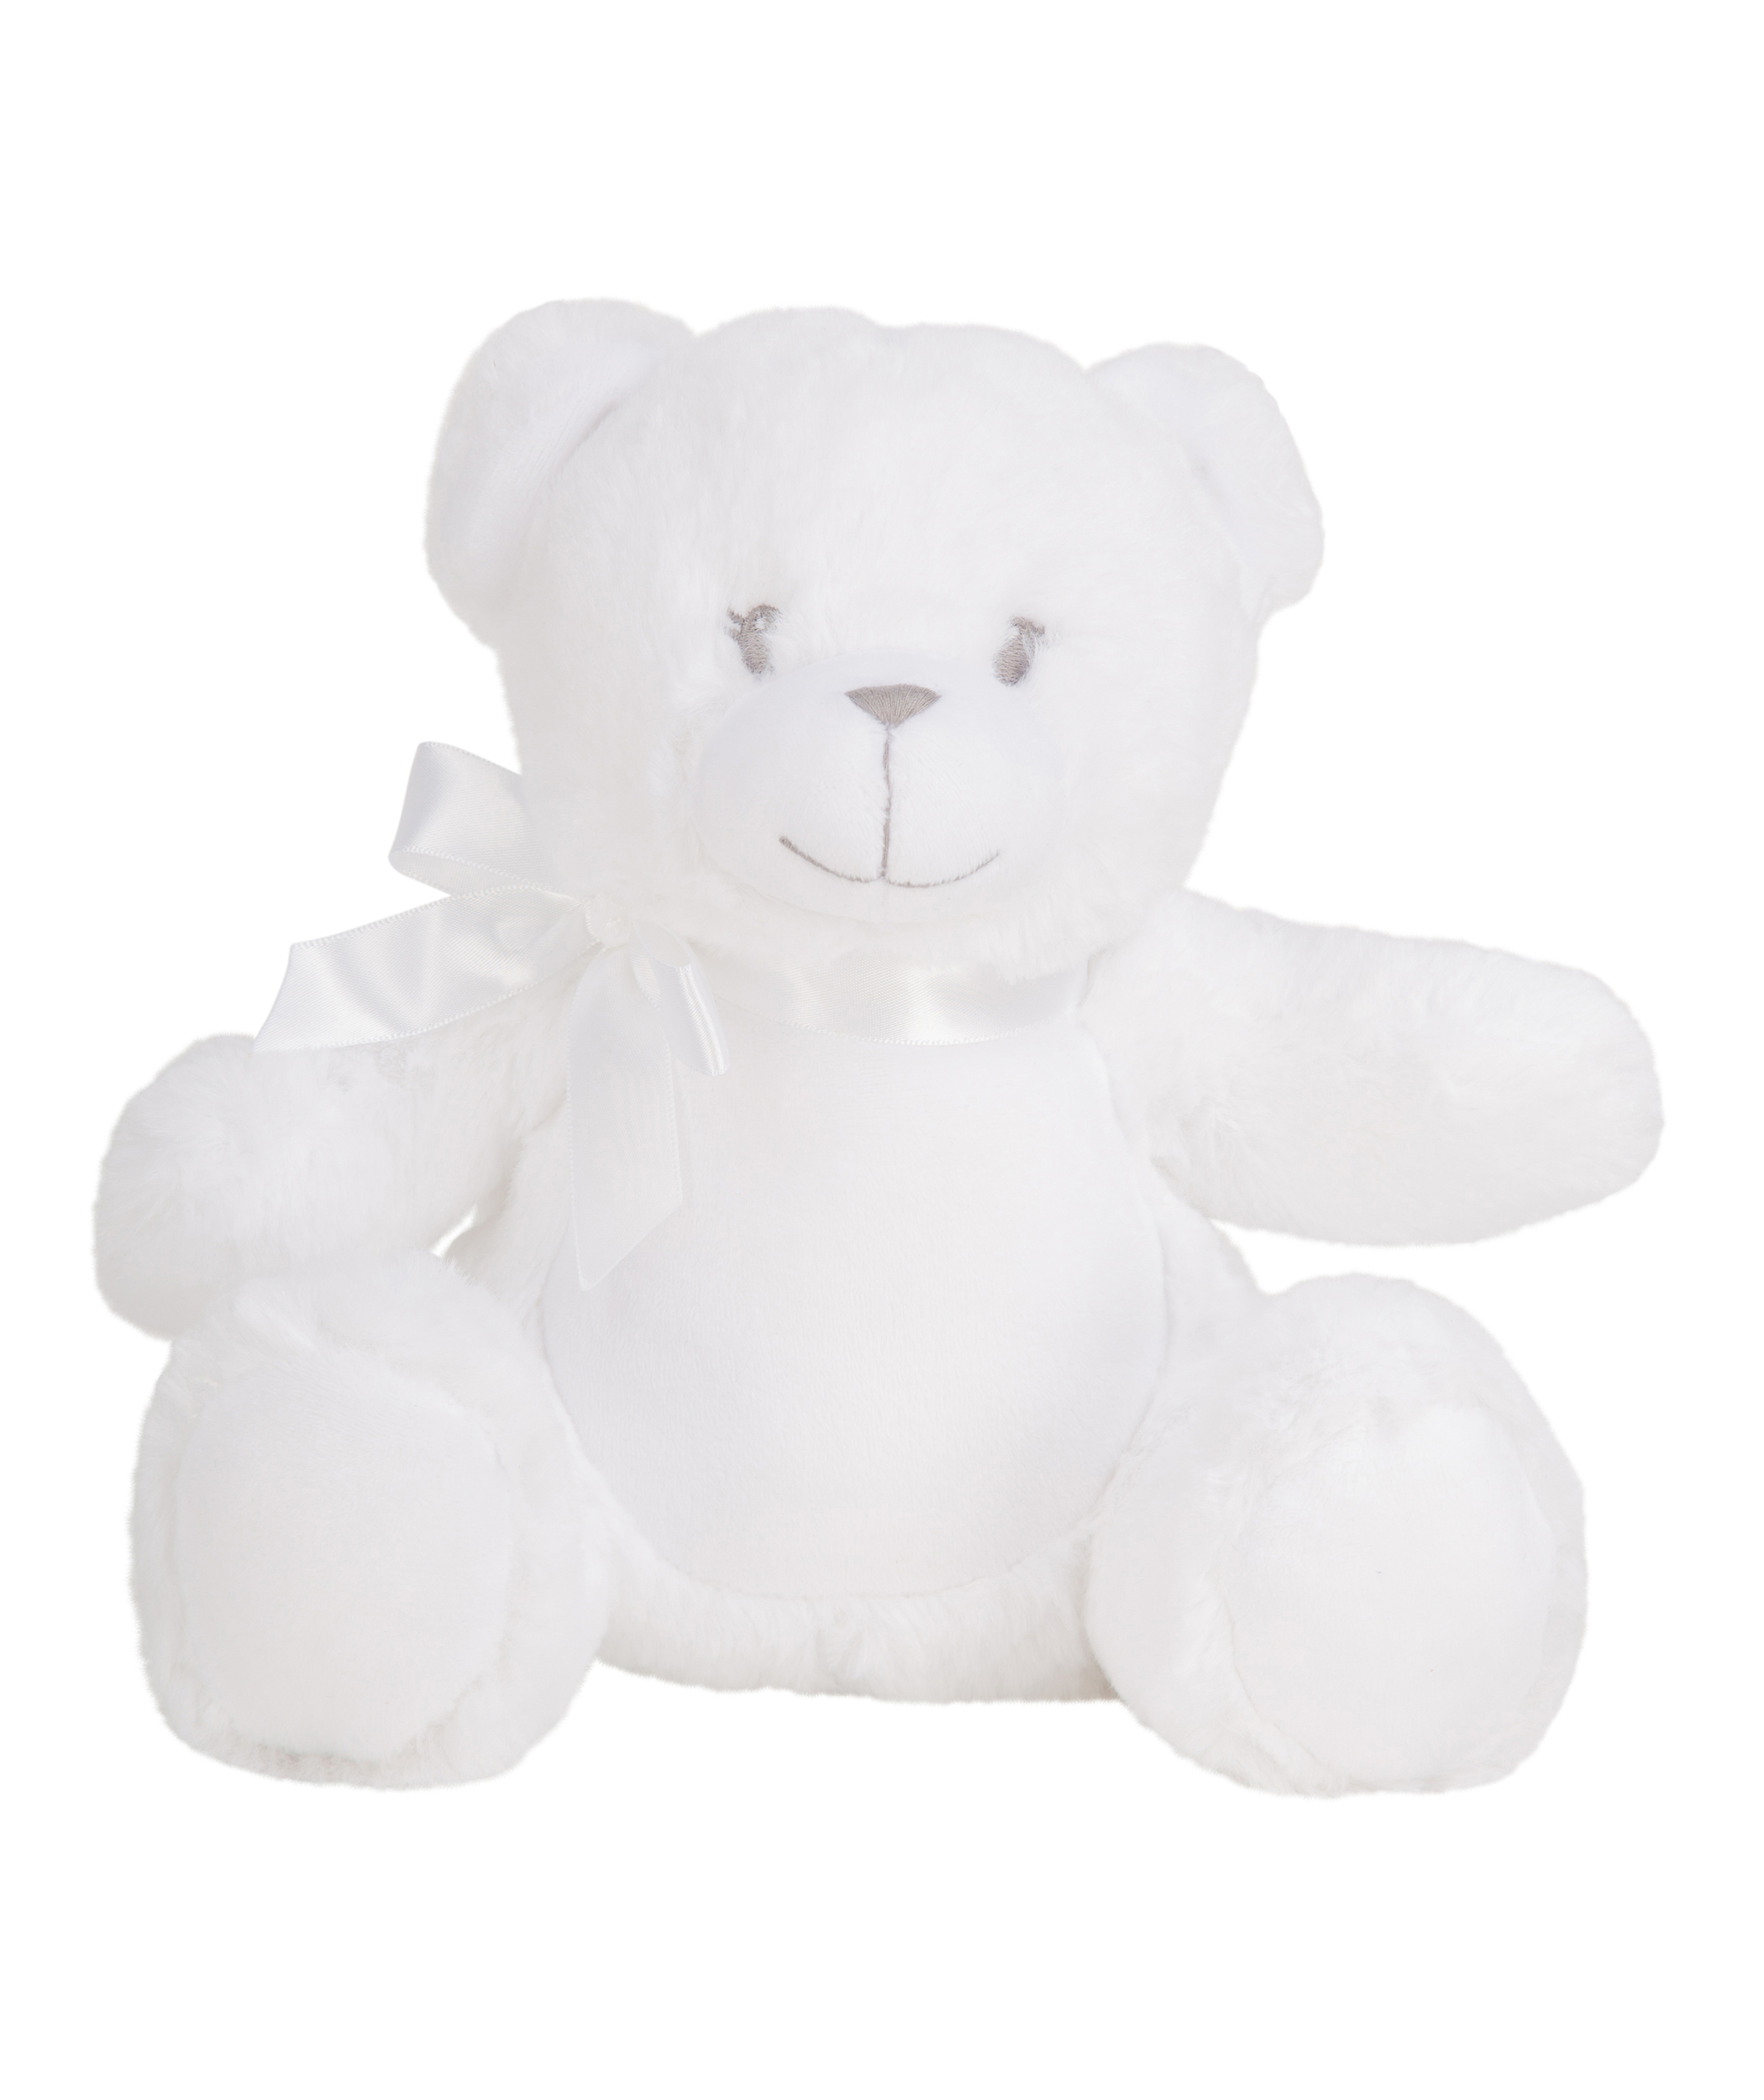 Mini peluche personnalisable - Teddy blanc - Peluches Personnalisables -  Les Gourmandises de Heidi